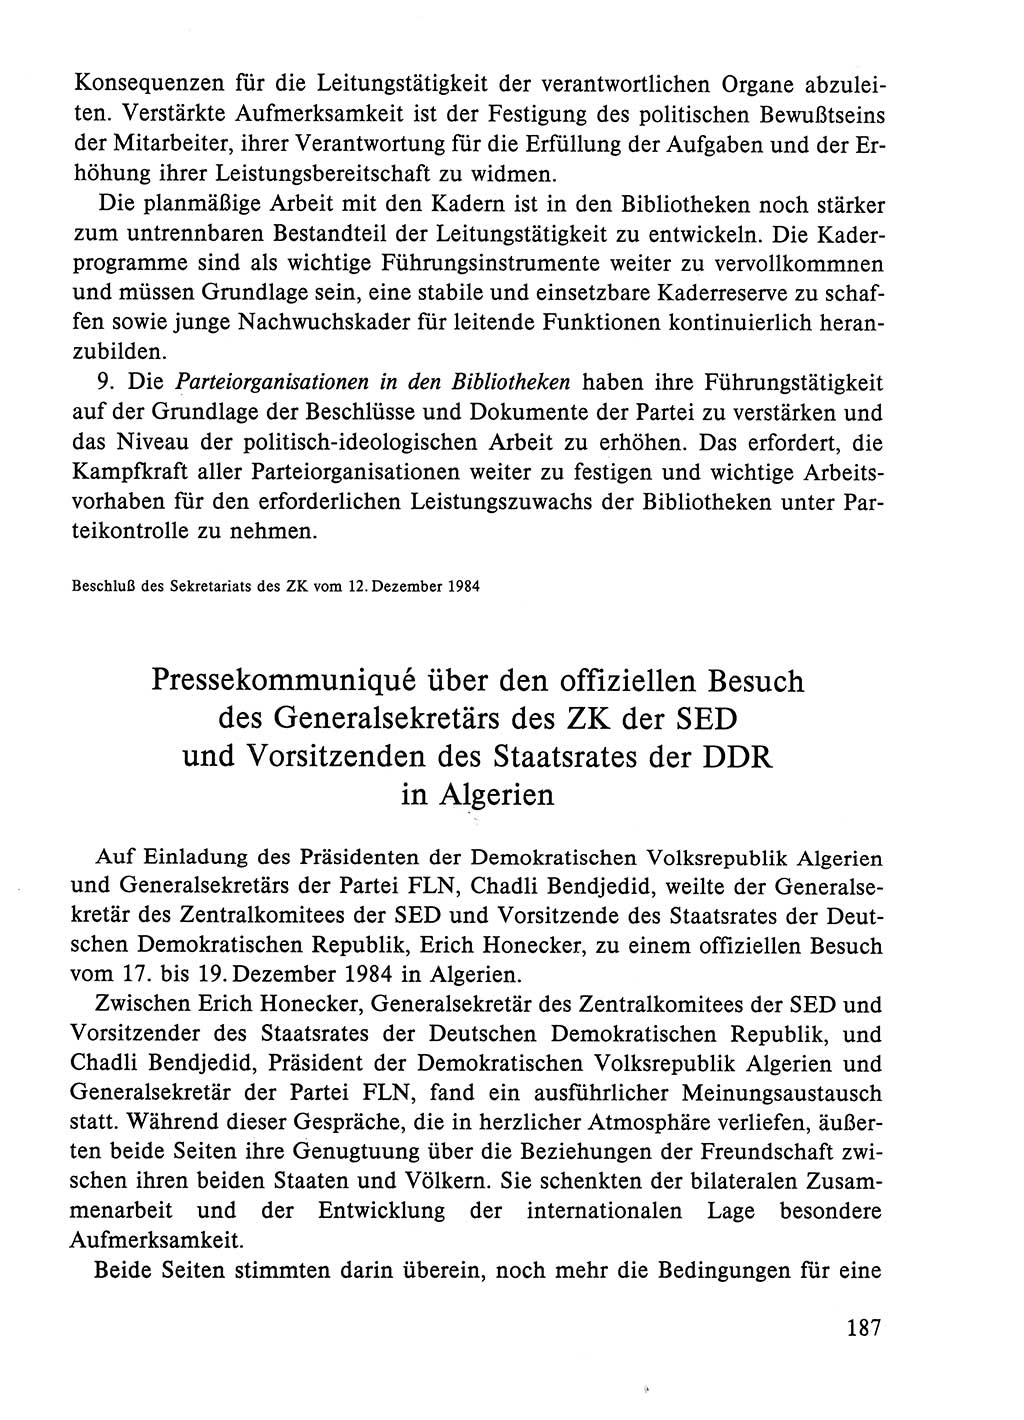 Dokumente der Sozialistischen Einheitspartei Deutschlands (SED) [Deutsche Demokratische Republik (DDR)] 1984-1985, Seite 240 (Dok. SED DDR 1984-1985, S. 240)